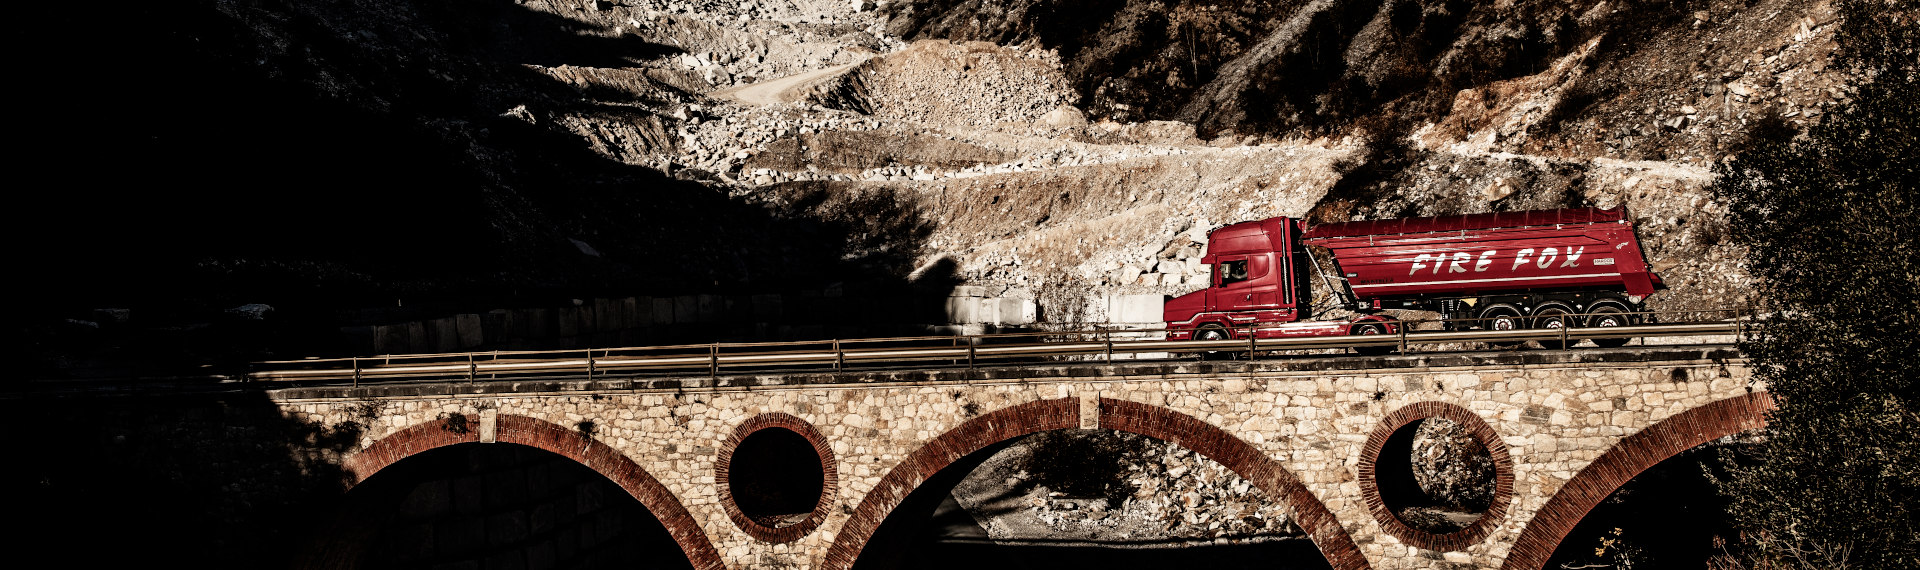 Một chiếc xe tải Fire Fox màu đỏ rực được làm bằng thép tấm Hardox 500 Tuf đang băng qua một cây cầu